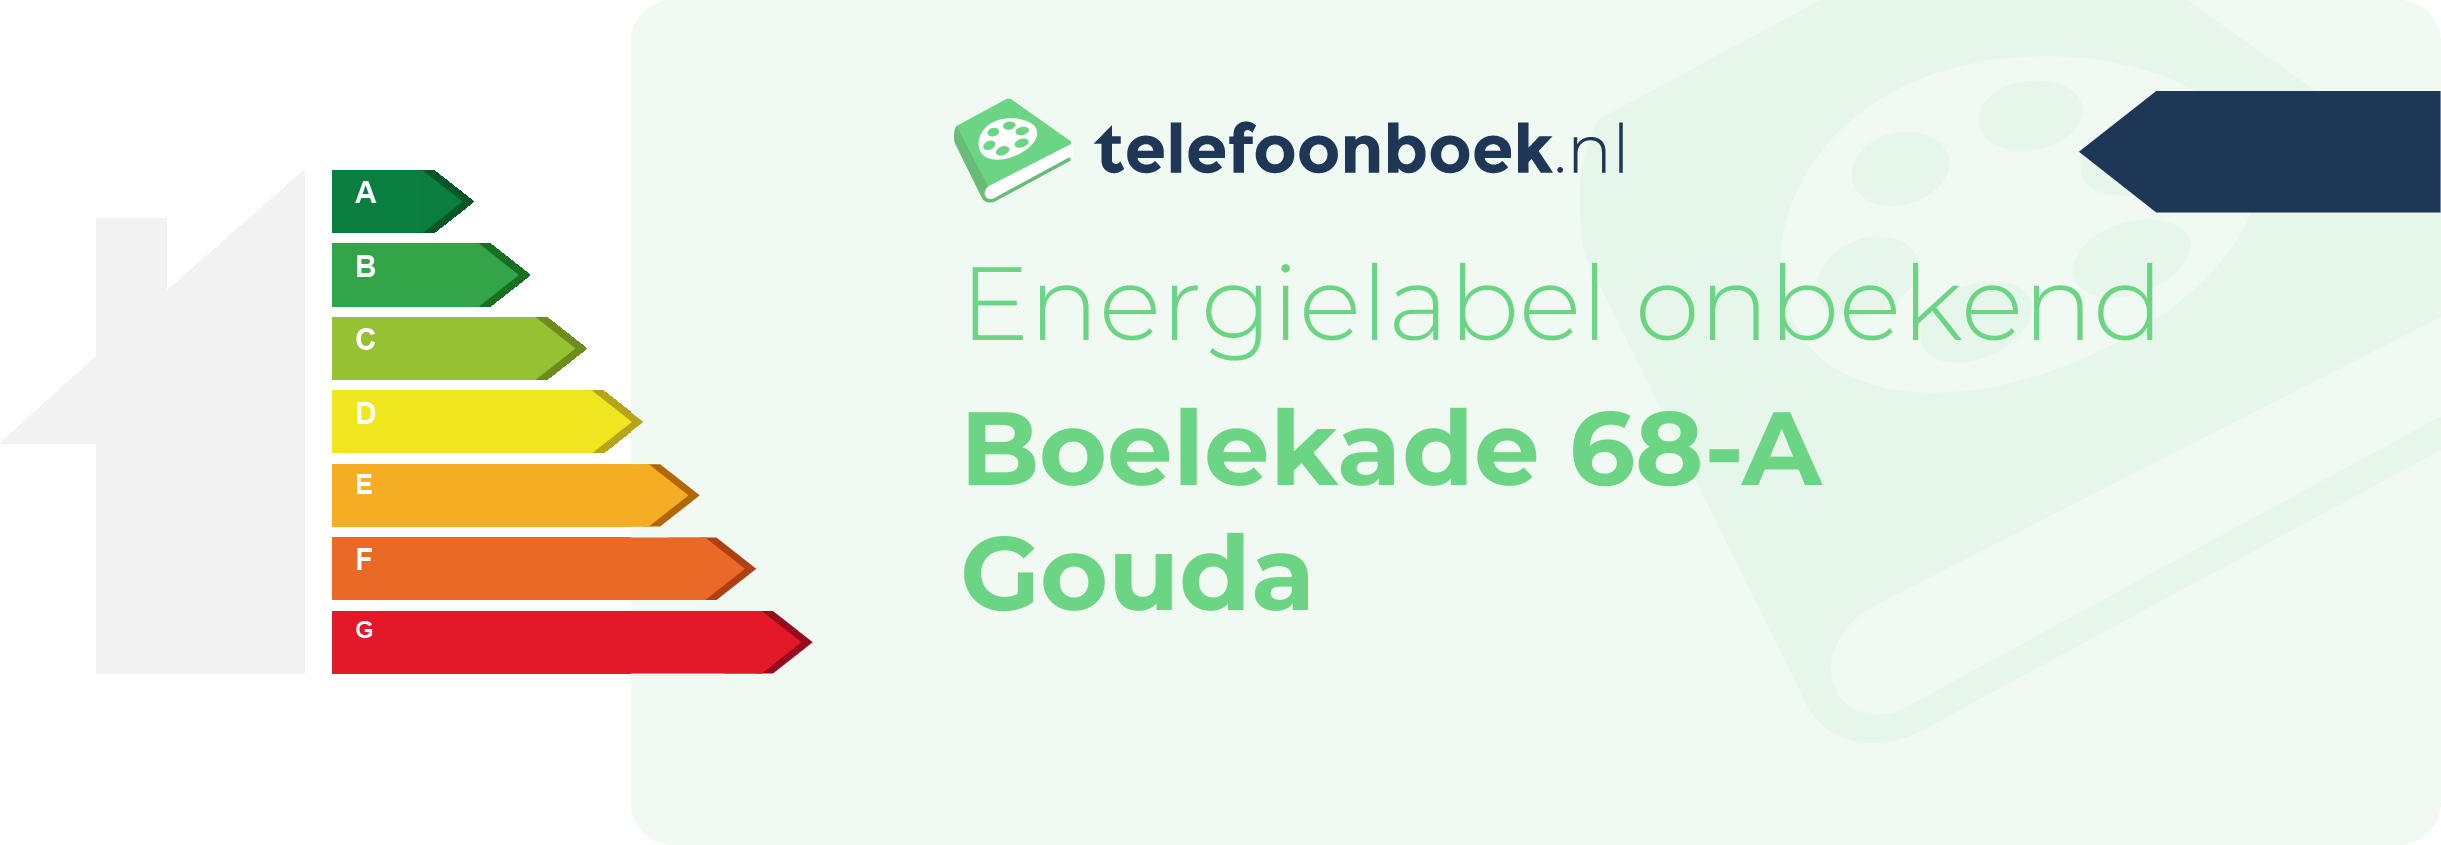 Energielabel Boelekade 68-A Gouda